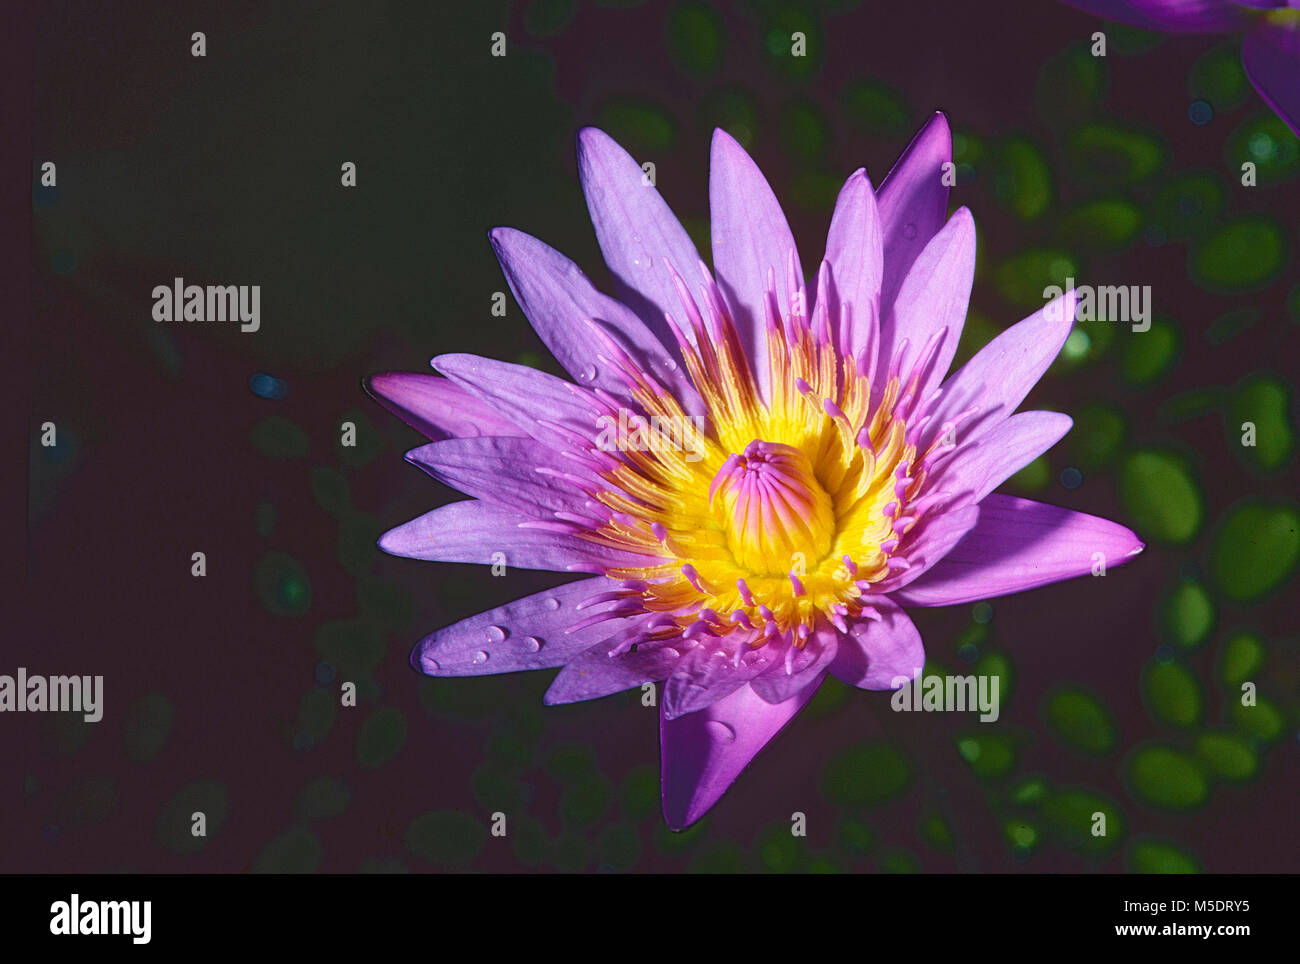 Star-lotus, Nymphaea nouchali, Nymphaceaceae, Water lily, Blüte, blühend, Blume, Pflanze, Botanischer Garten, Singapore Stock Photo